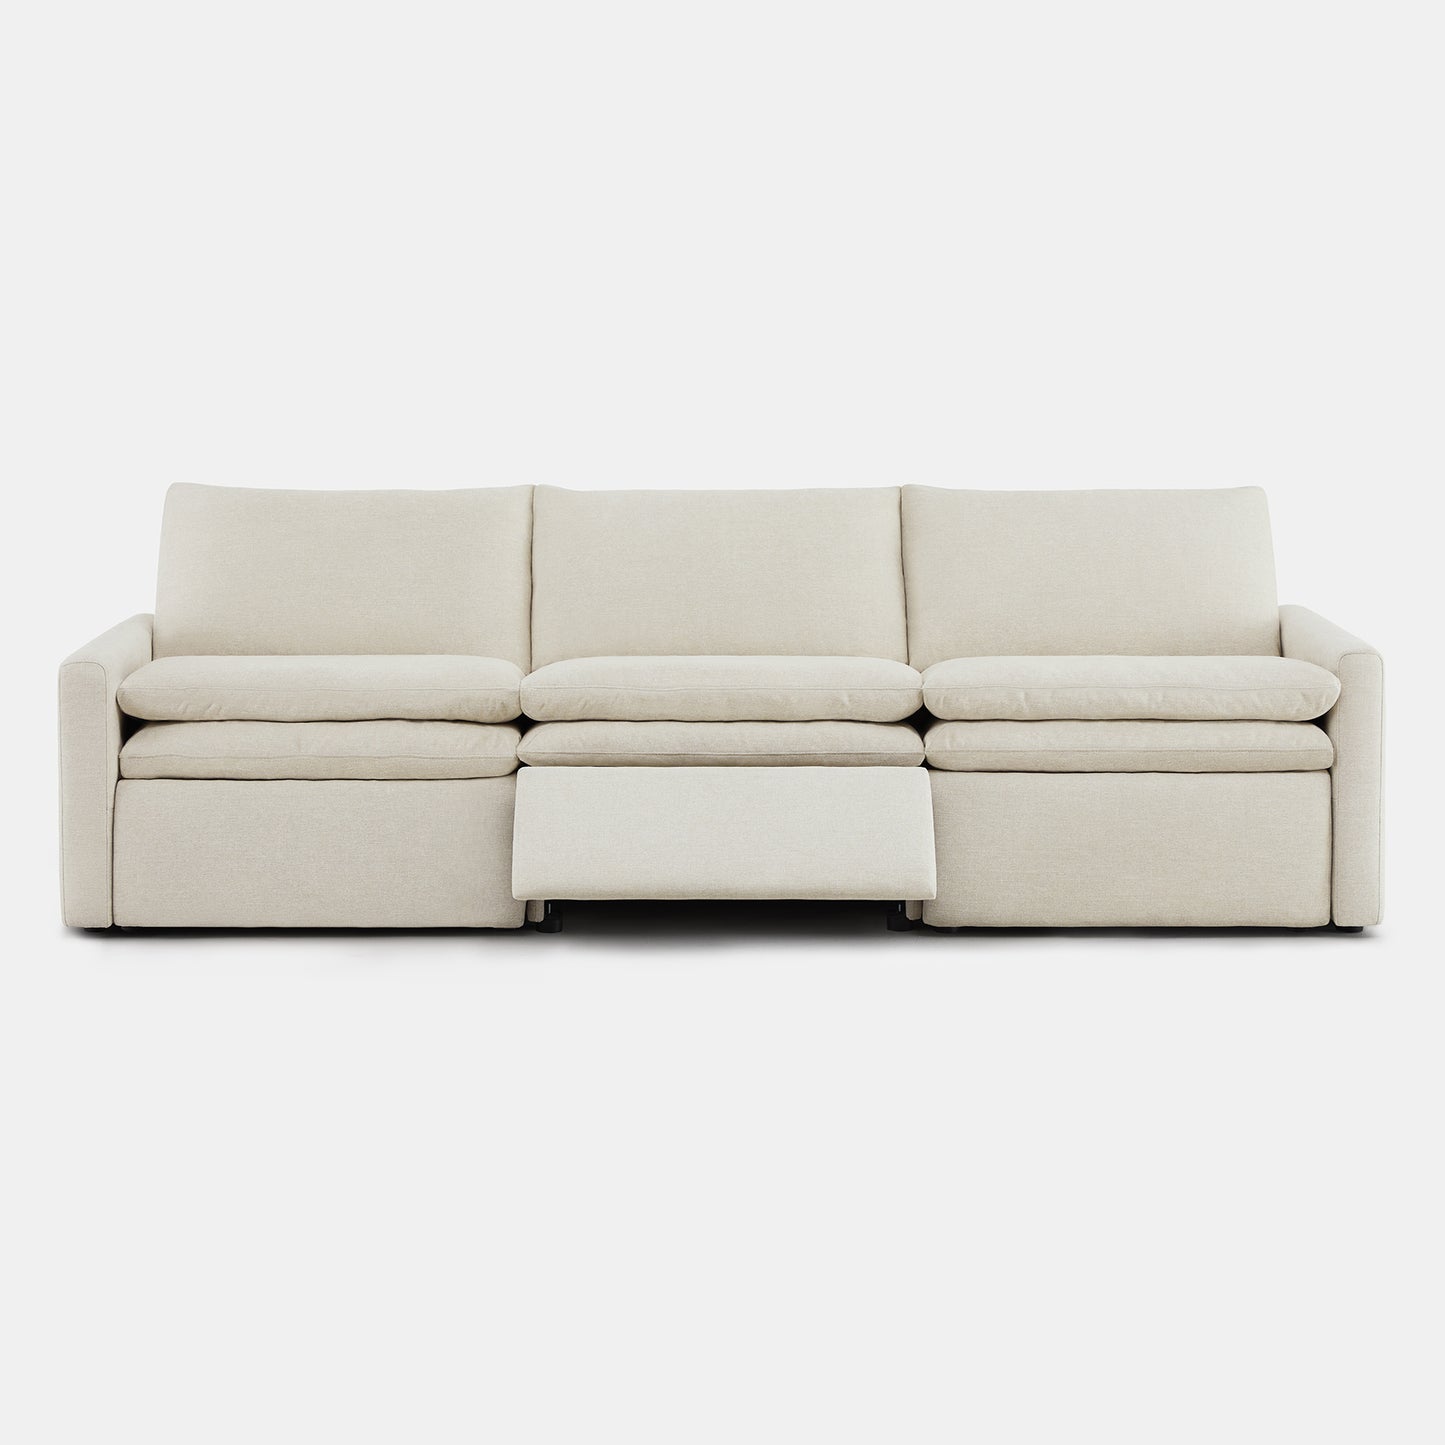 CHITA ohana reclining couch